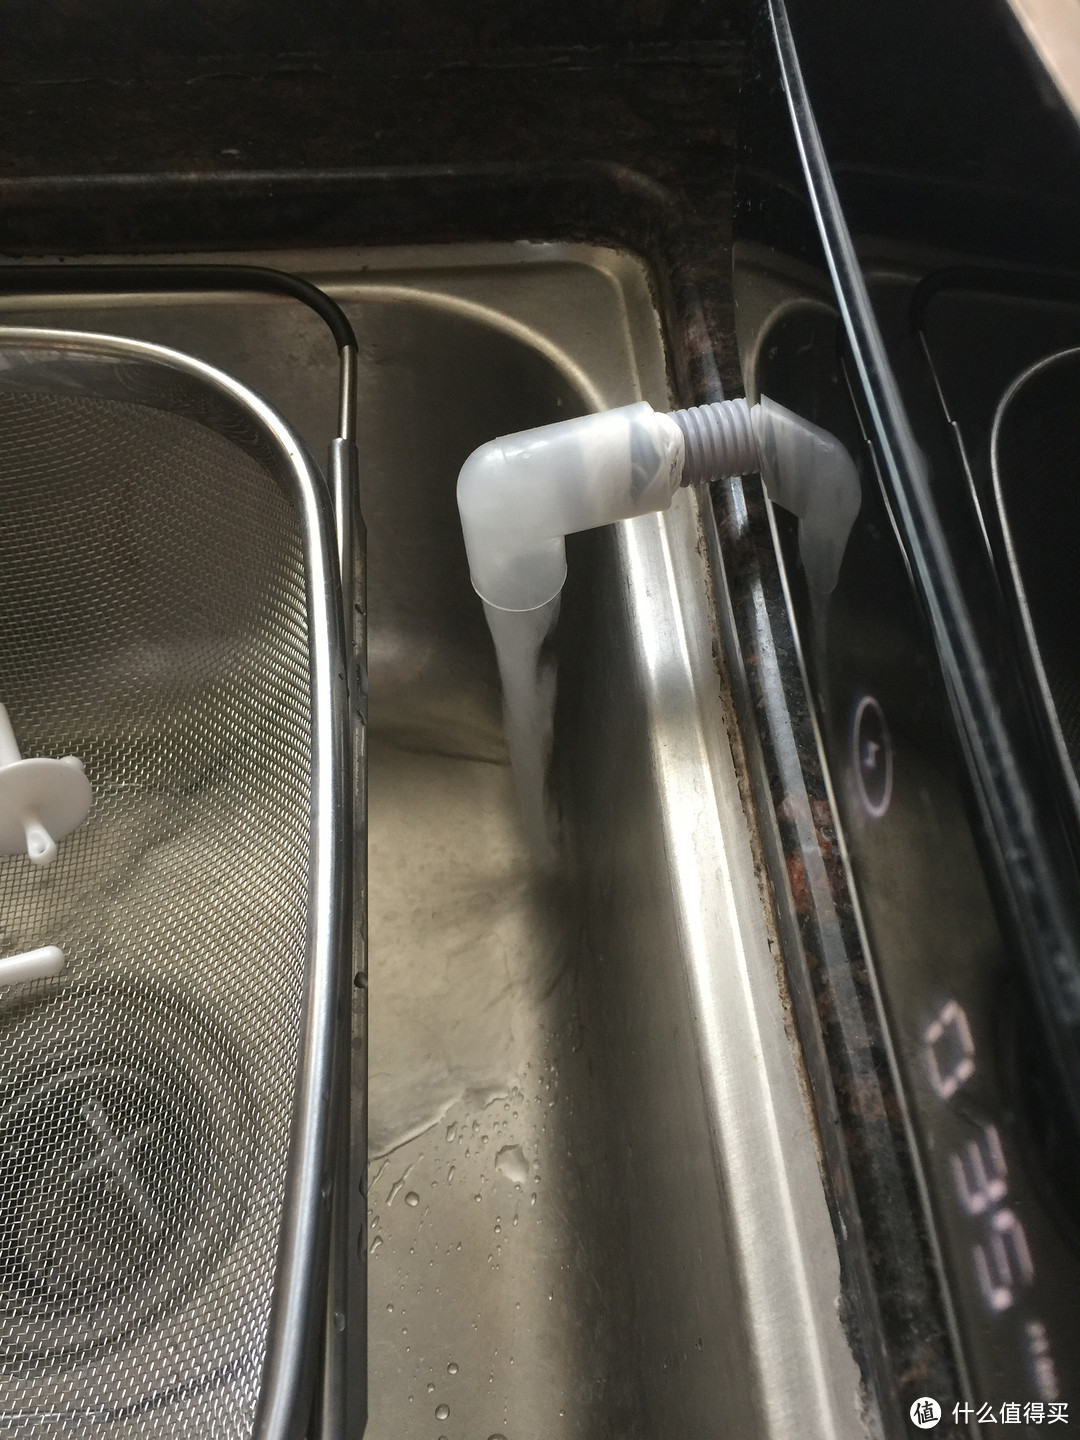 电器虽好，也得动脑——使用洗碗机和垃圾处理器半年后的一些小改造